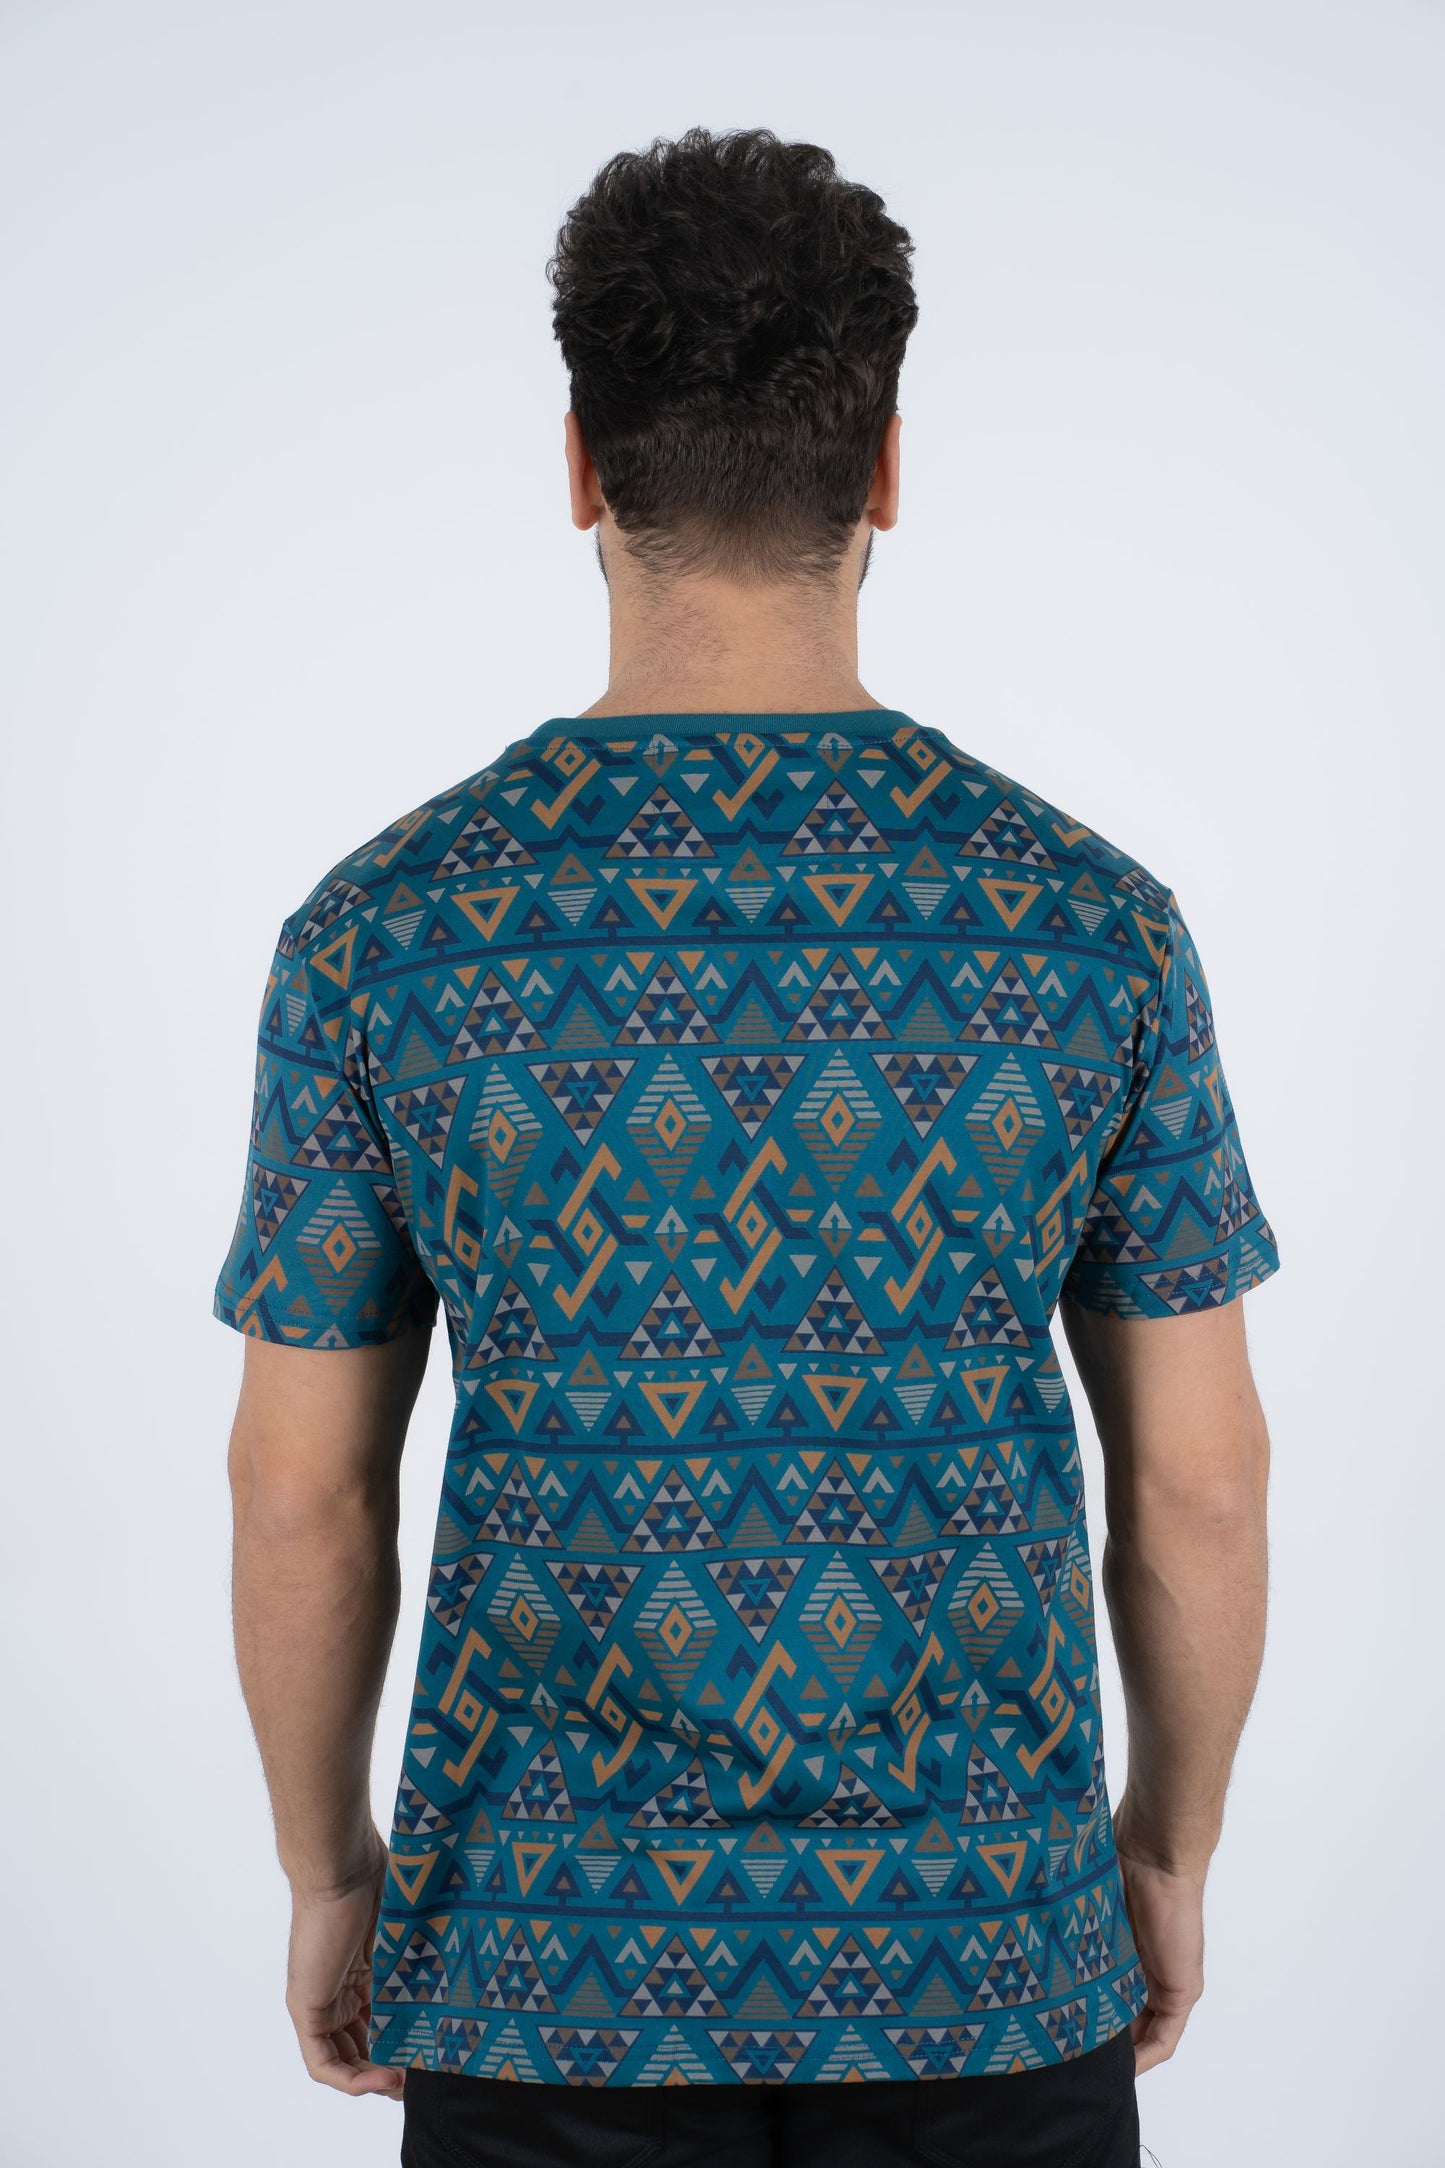 Men's Cotton Teal Aztec Print T-shirt